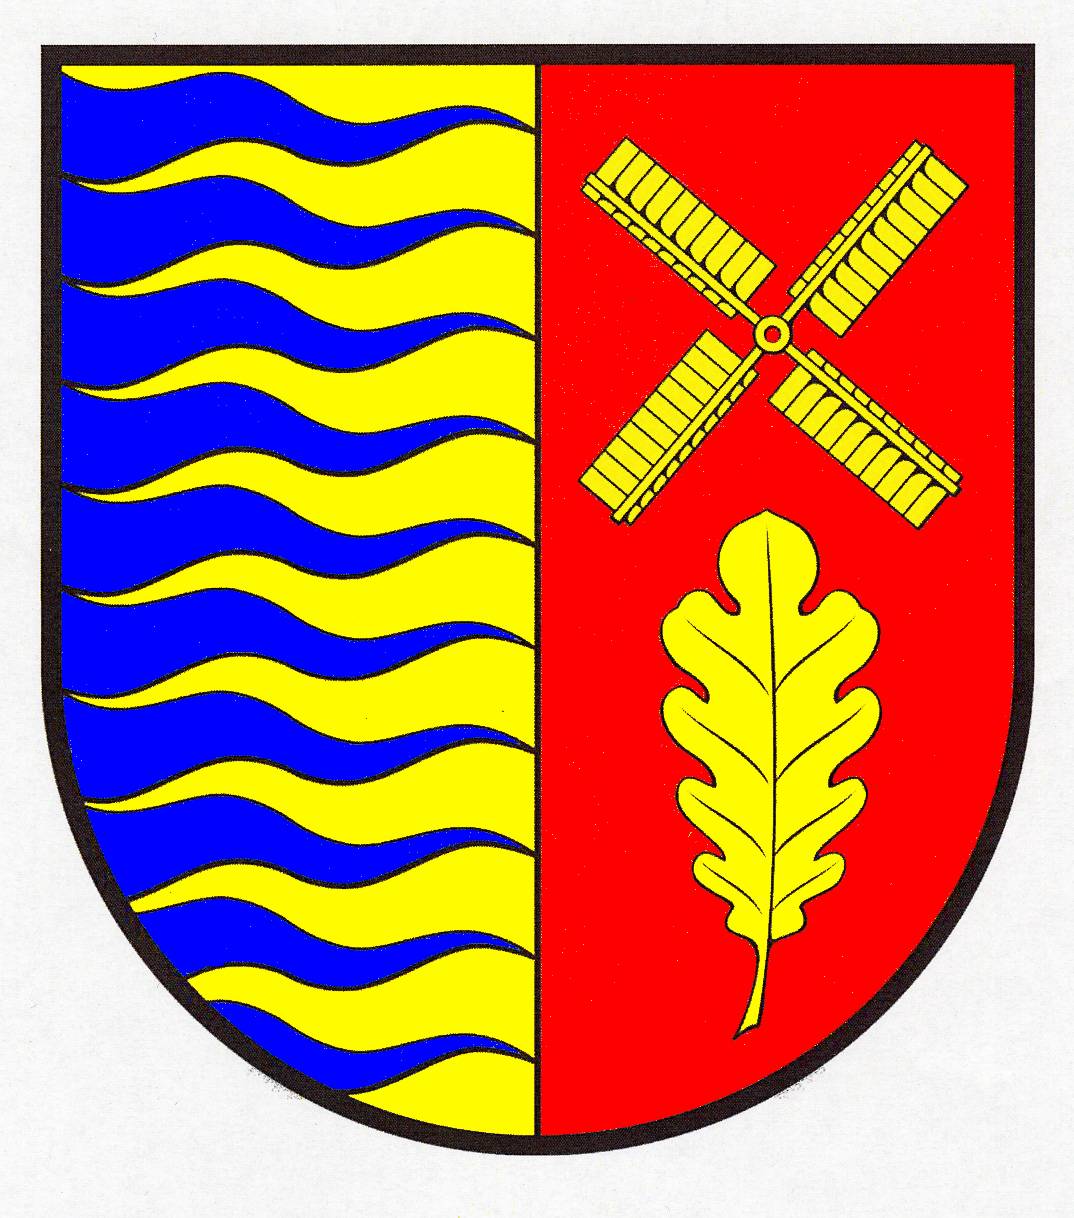 Wappen Gemeinde Bordelum, Kreis Nordfriesland